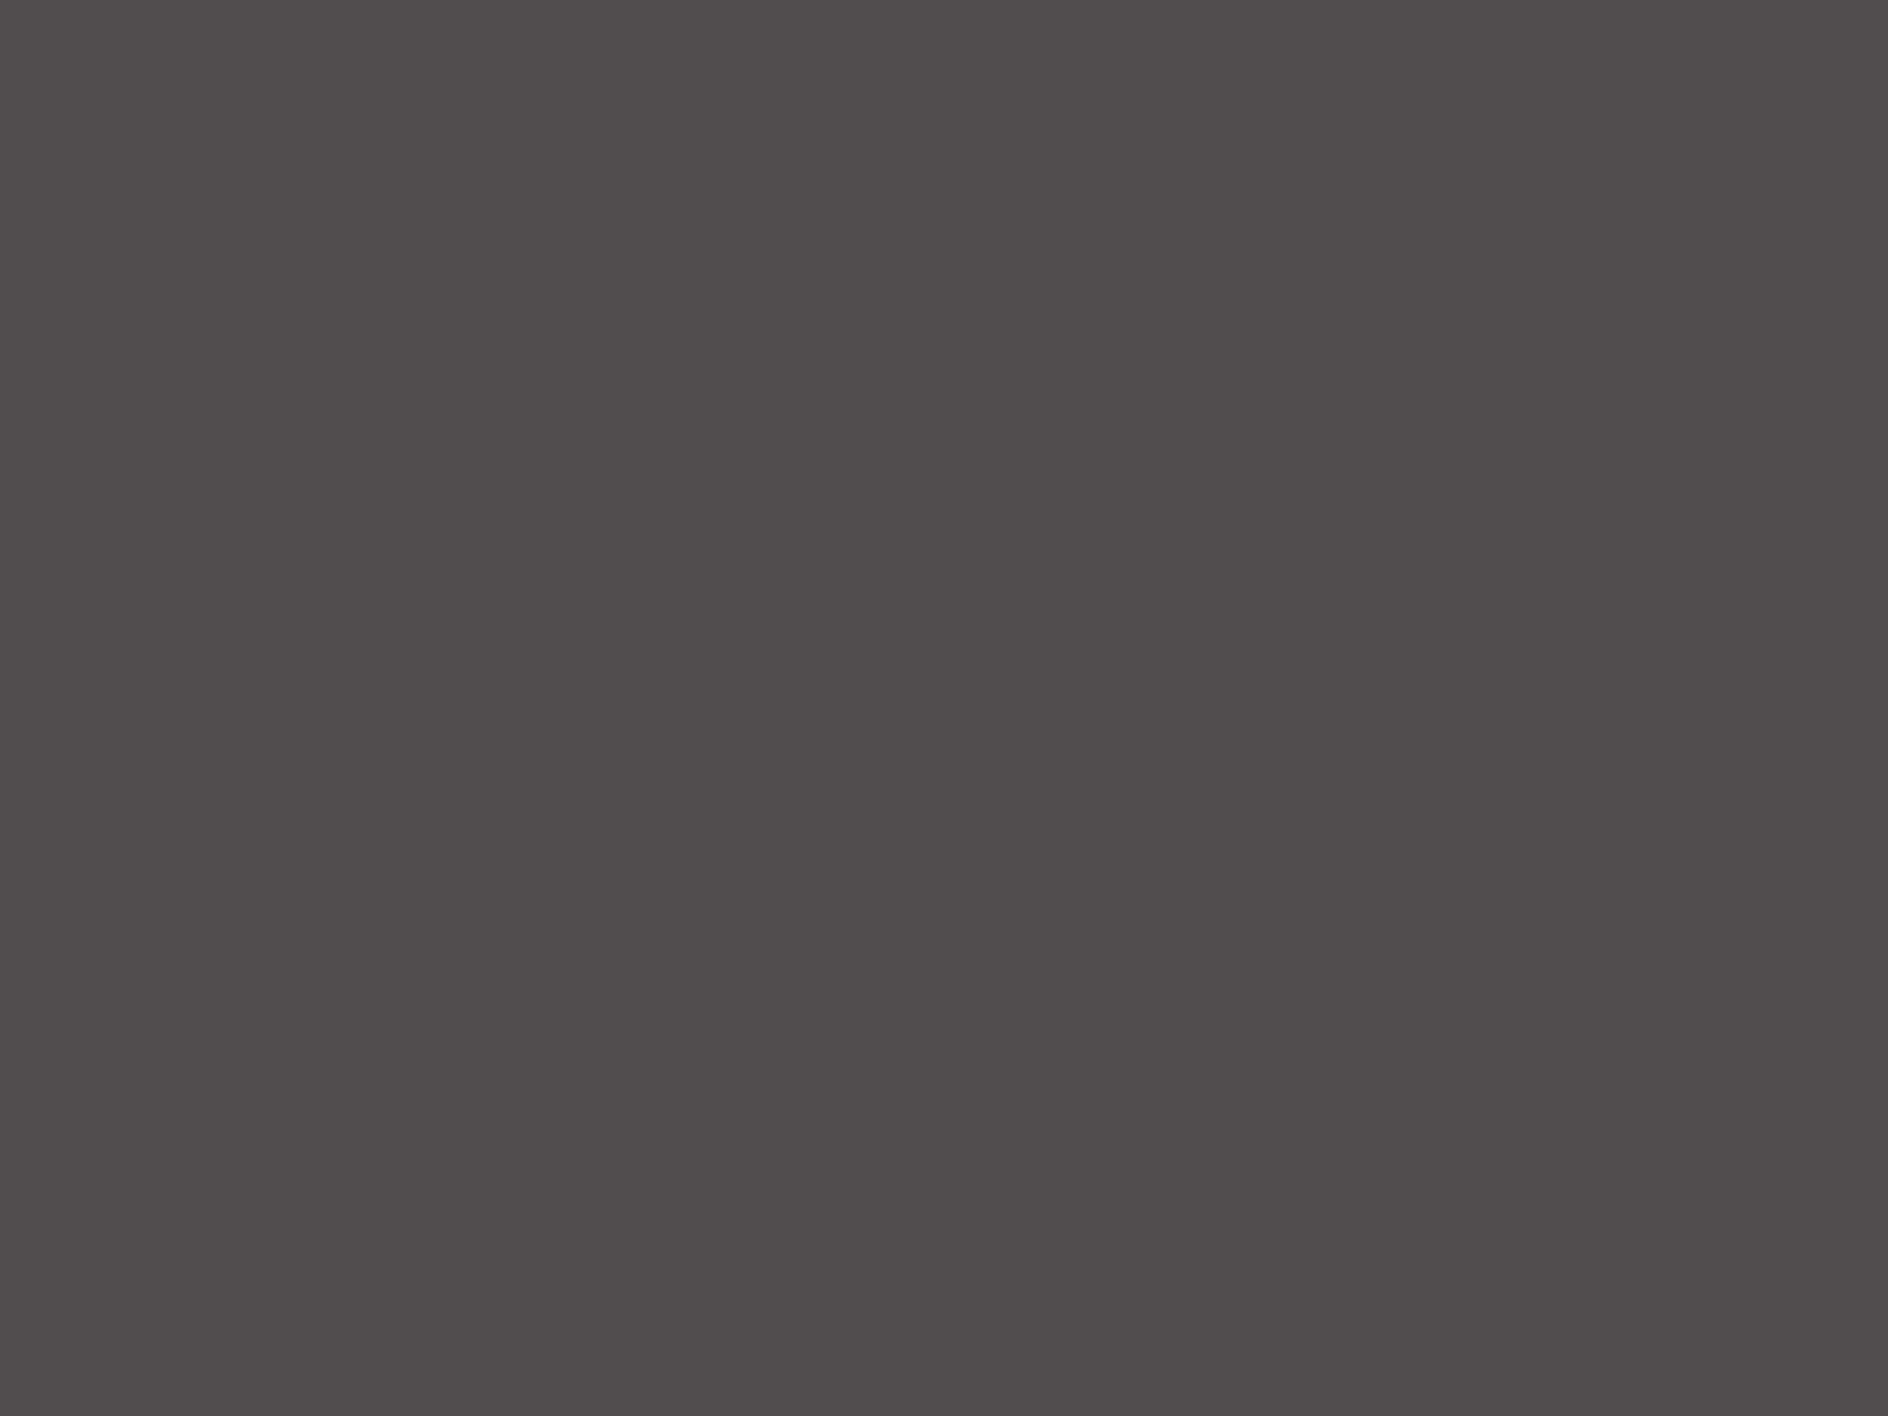 Филиппа Сезар. Кадр из видео «Квантовое смешивание» (2020). Выставка «Индекс подобия», Дом культуры «ГЭС-2», Москва